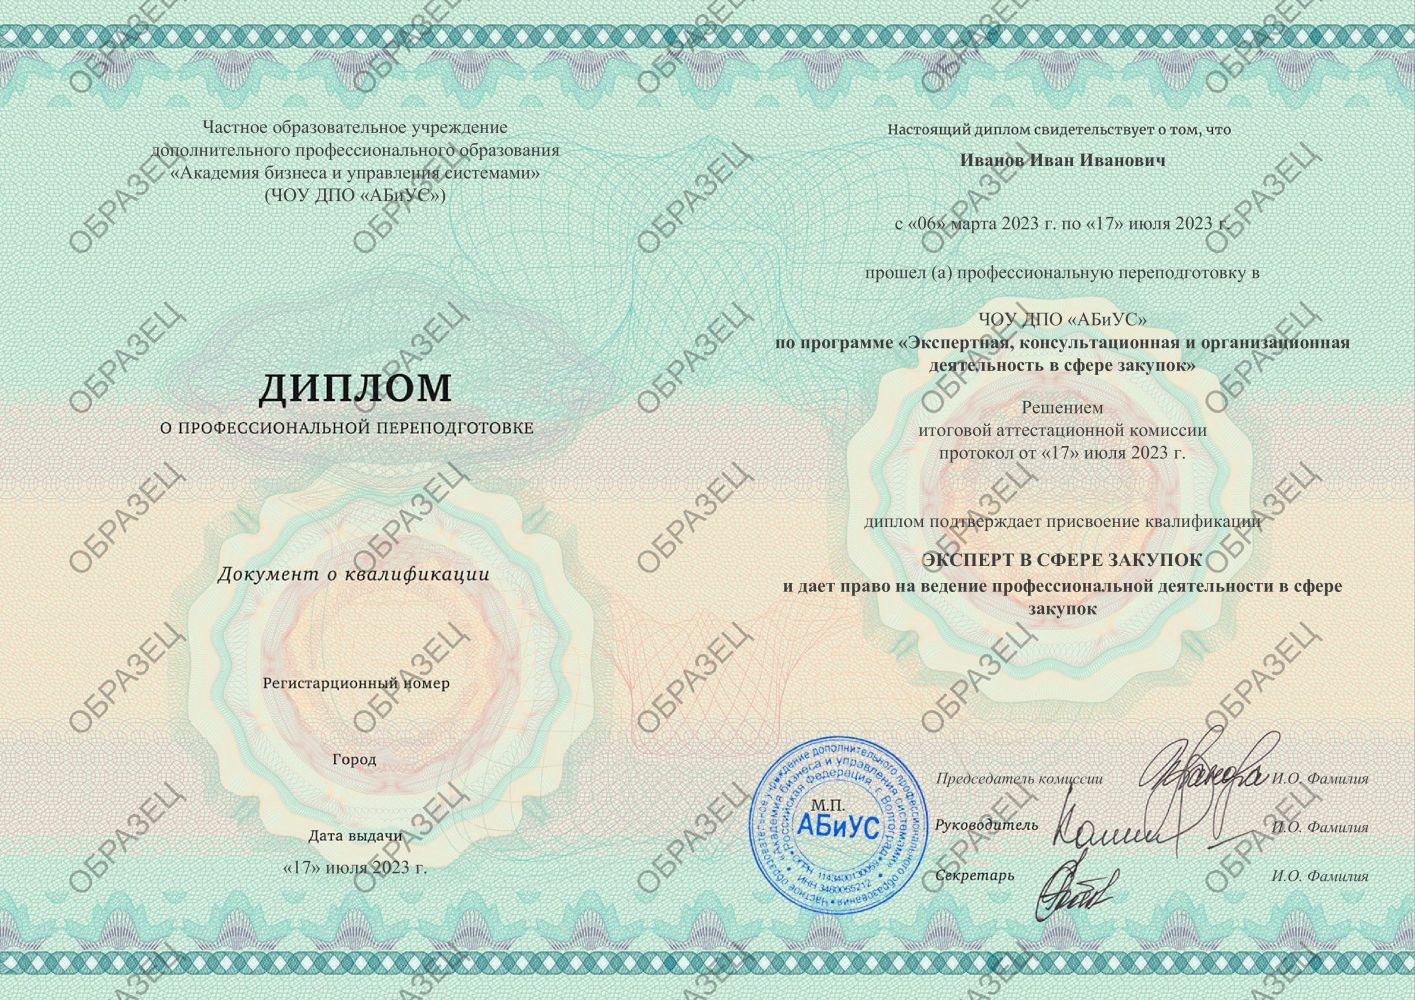 Диплом Экспертная, консультационная и организационная деятельность в сфере закупок 500 часов 23500 руб.